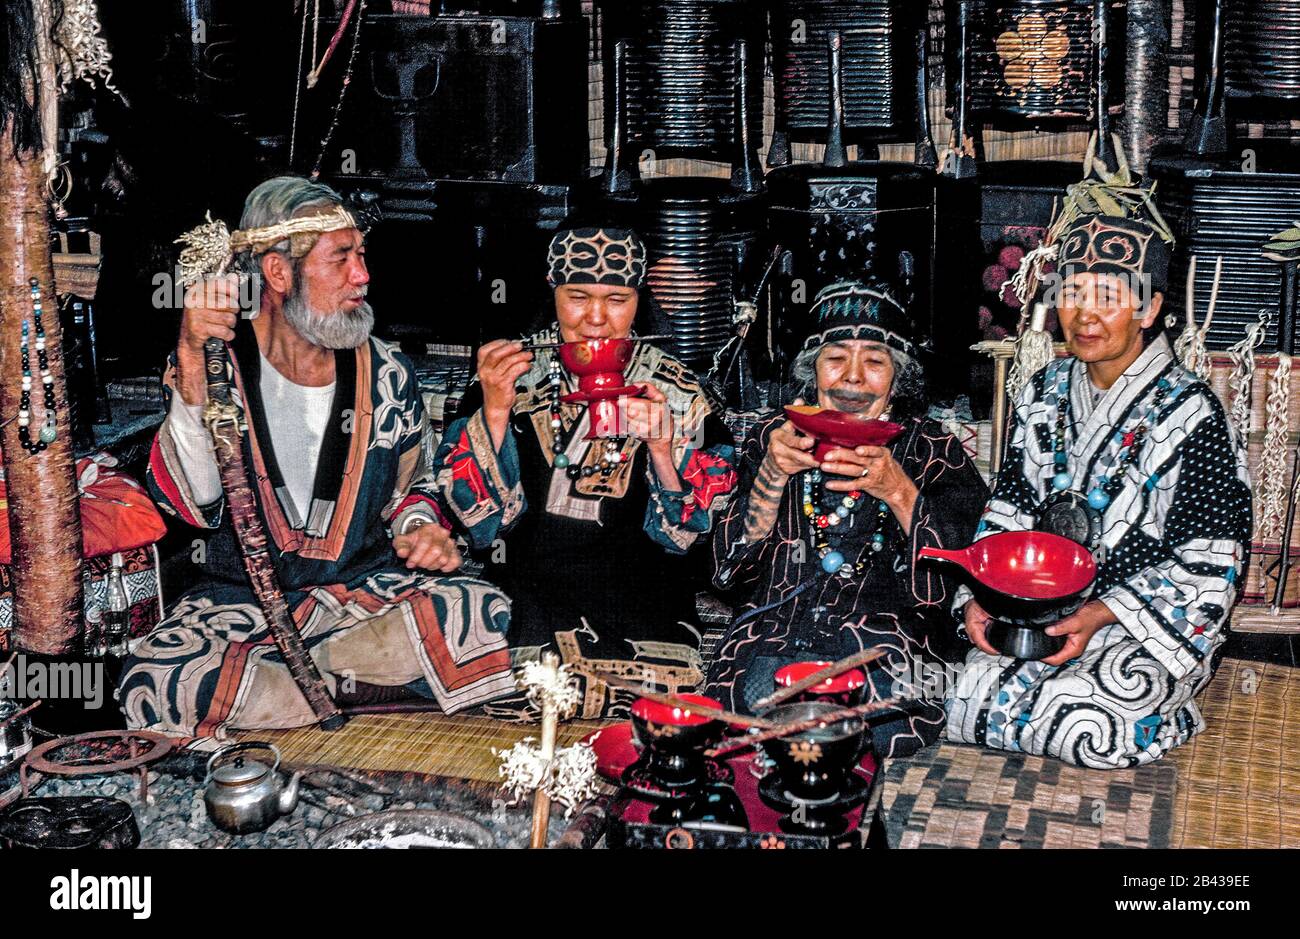 Un hombre ainu barbudo y tres mujeres posan en vestido tradicional con recuerdos ainu que venden en una casa natal que está abierta a los turistas en la isla de Hokkaido en el norte de Japón. Detrás de ellos hay barricas de laca que contienen tesoros familiares. La mujer mayor, de 84 años, tiene un tatuaje alrededor de su boca que se asemeja a un bigote. La dolorosa tradición de frotar el hollín en cortes en la piel durante la infancia de las niñas ainu para protegerse de los malos espíritus ha sido proscrita desde entonces por el gobierno japonés. Estos eran 4 de sólo 300 ainu de sangre pura que todavía viven cuando esta fotografía histórica fue tomada en 1962 Foto de stock